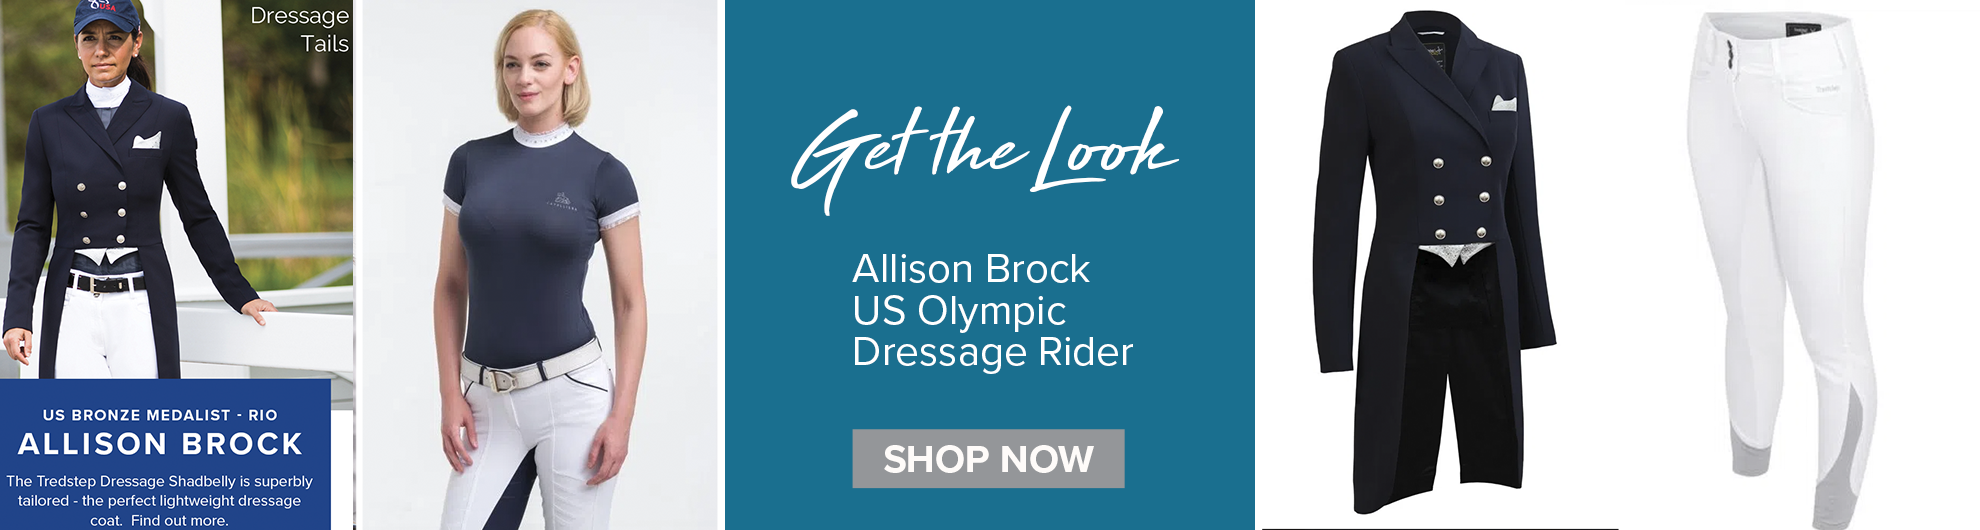 Get the Look - Allison Brock